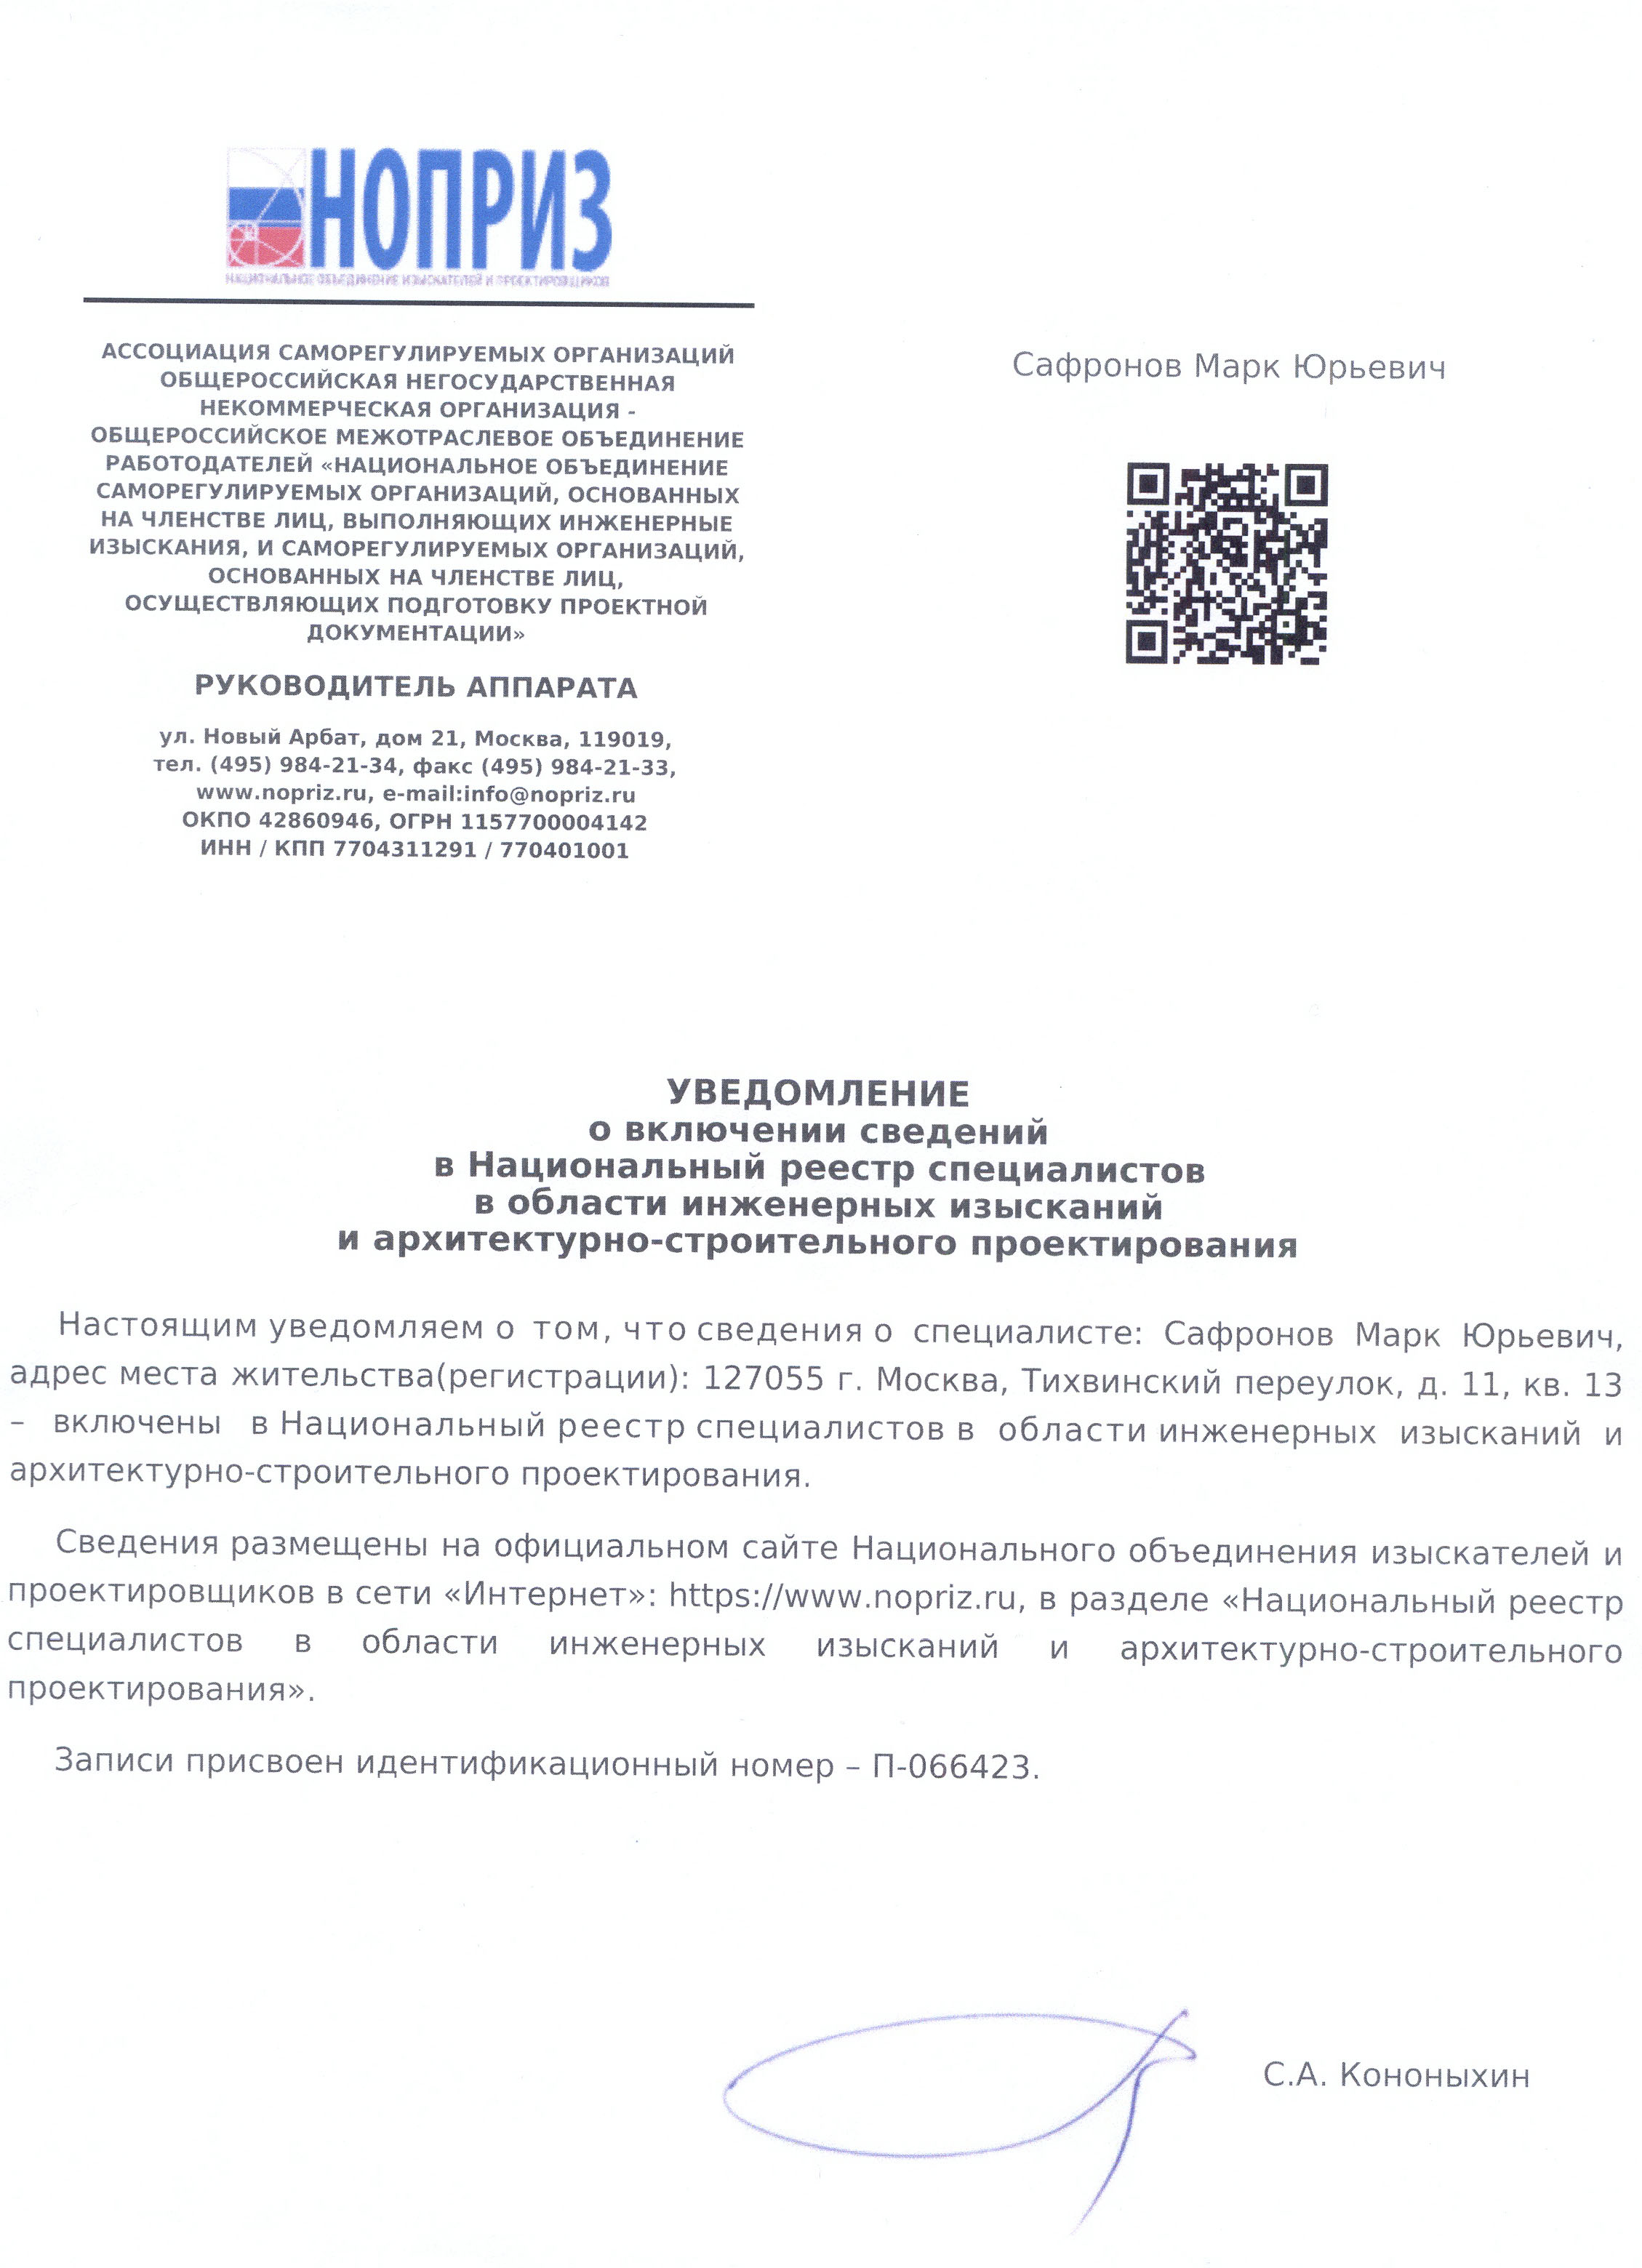 Сертификат НОПРИЗ Марк Сафронов